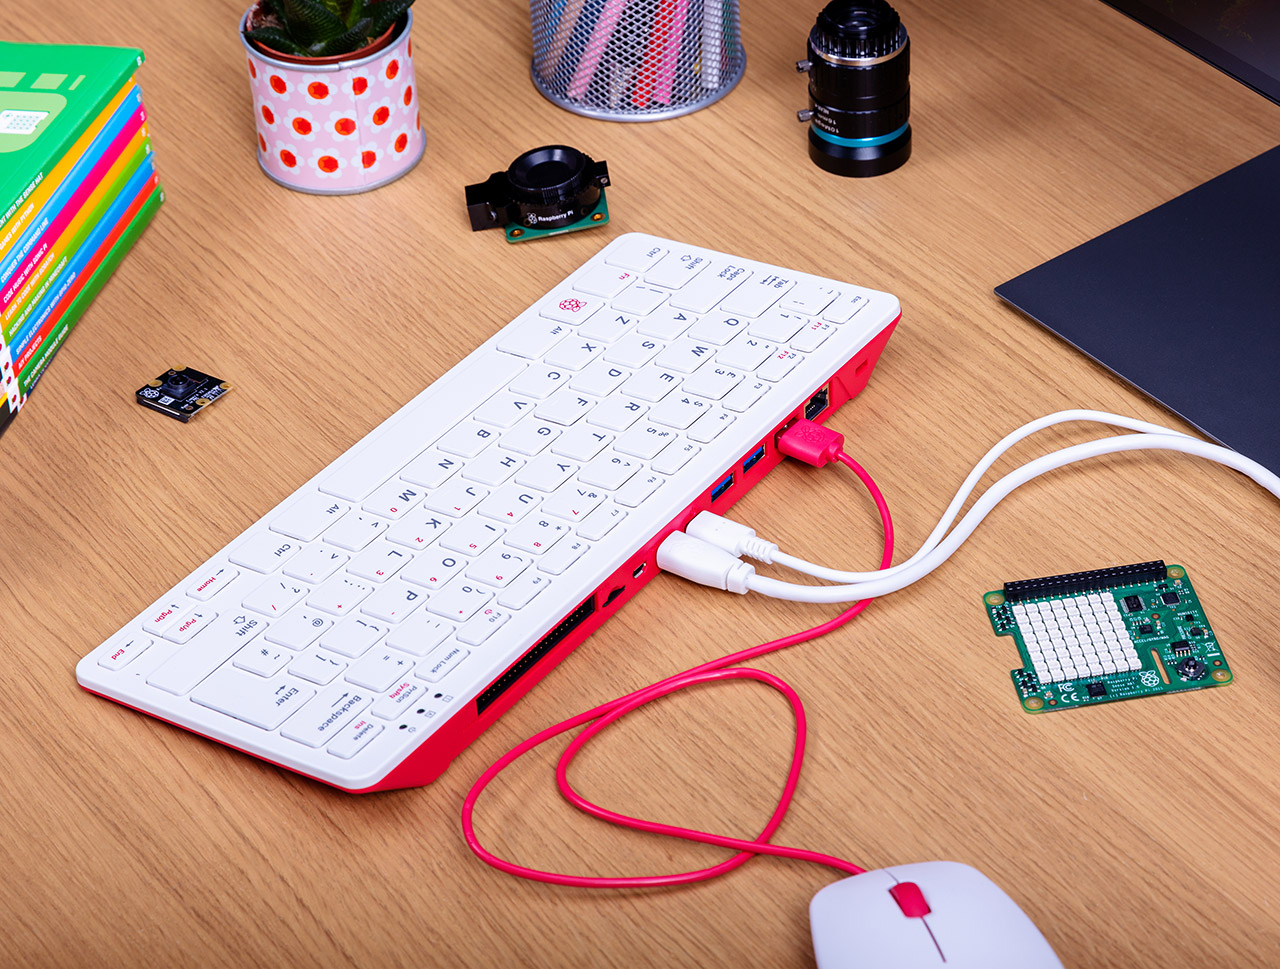 Raspberry Pi 400 Computer Keyboard